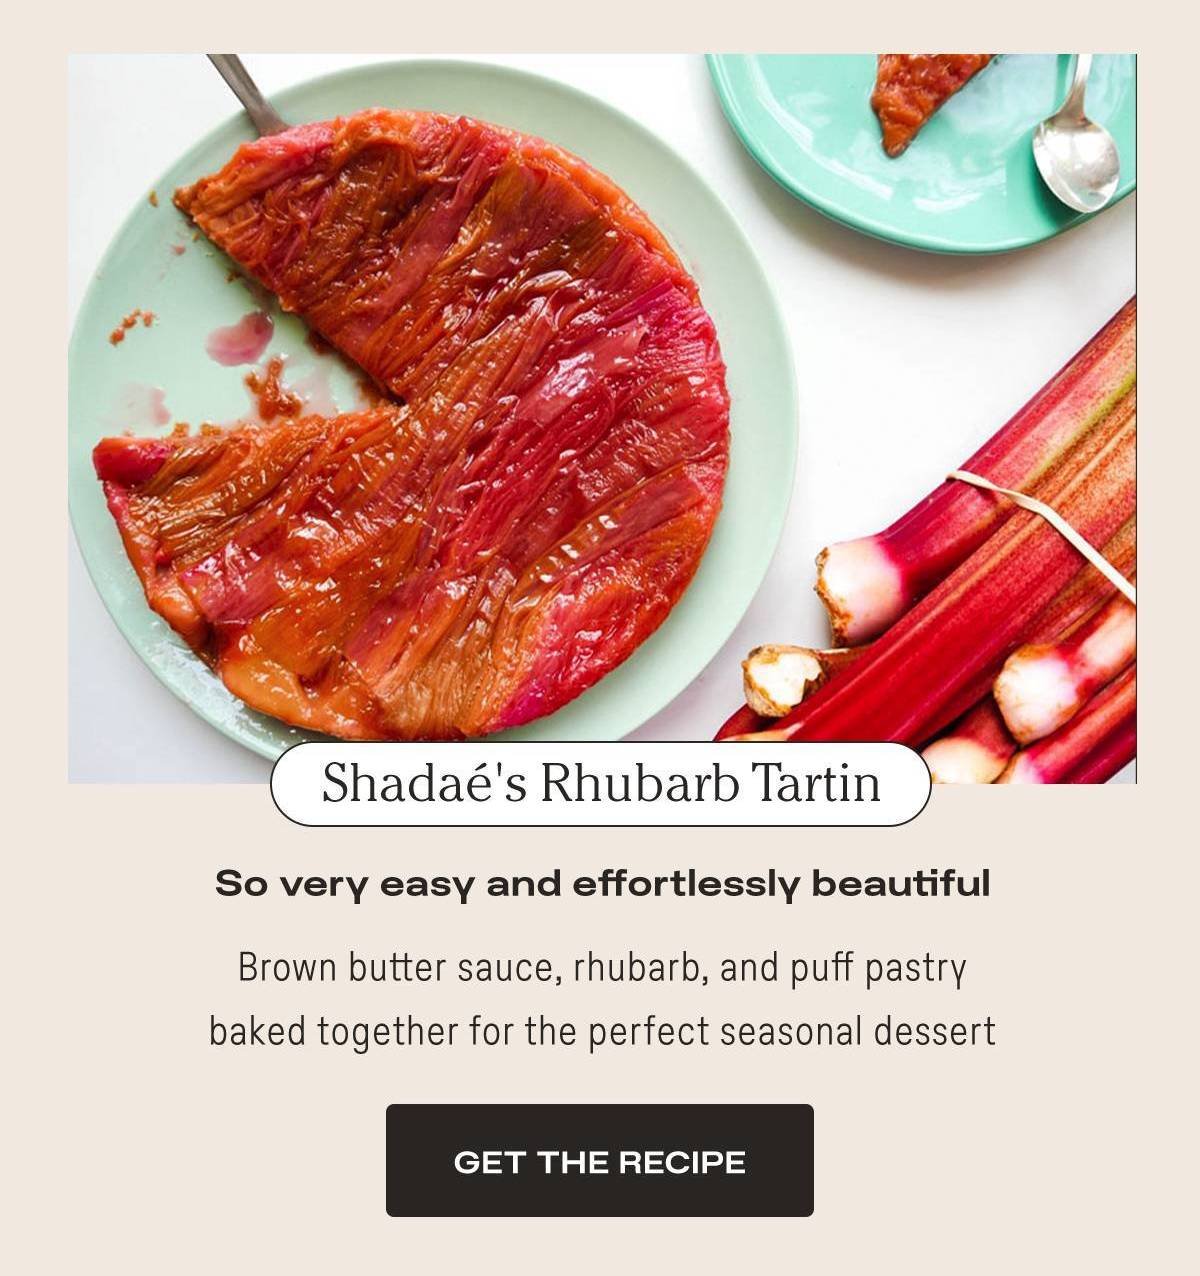 Shadae's Rhubarb Tartin